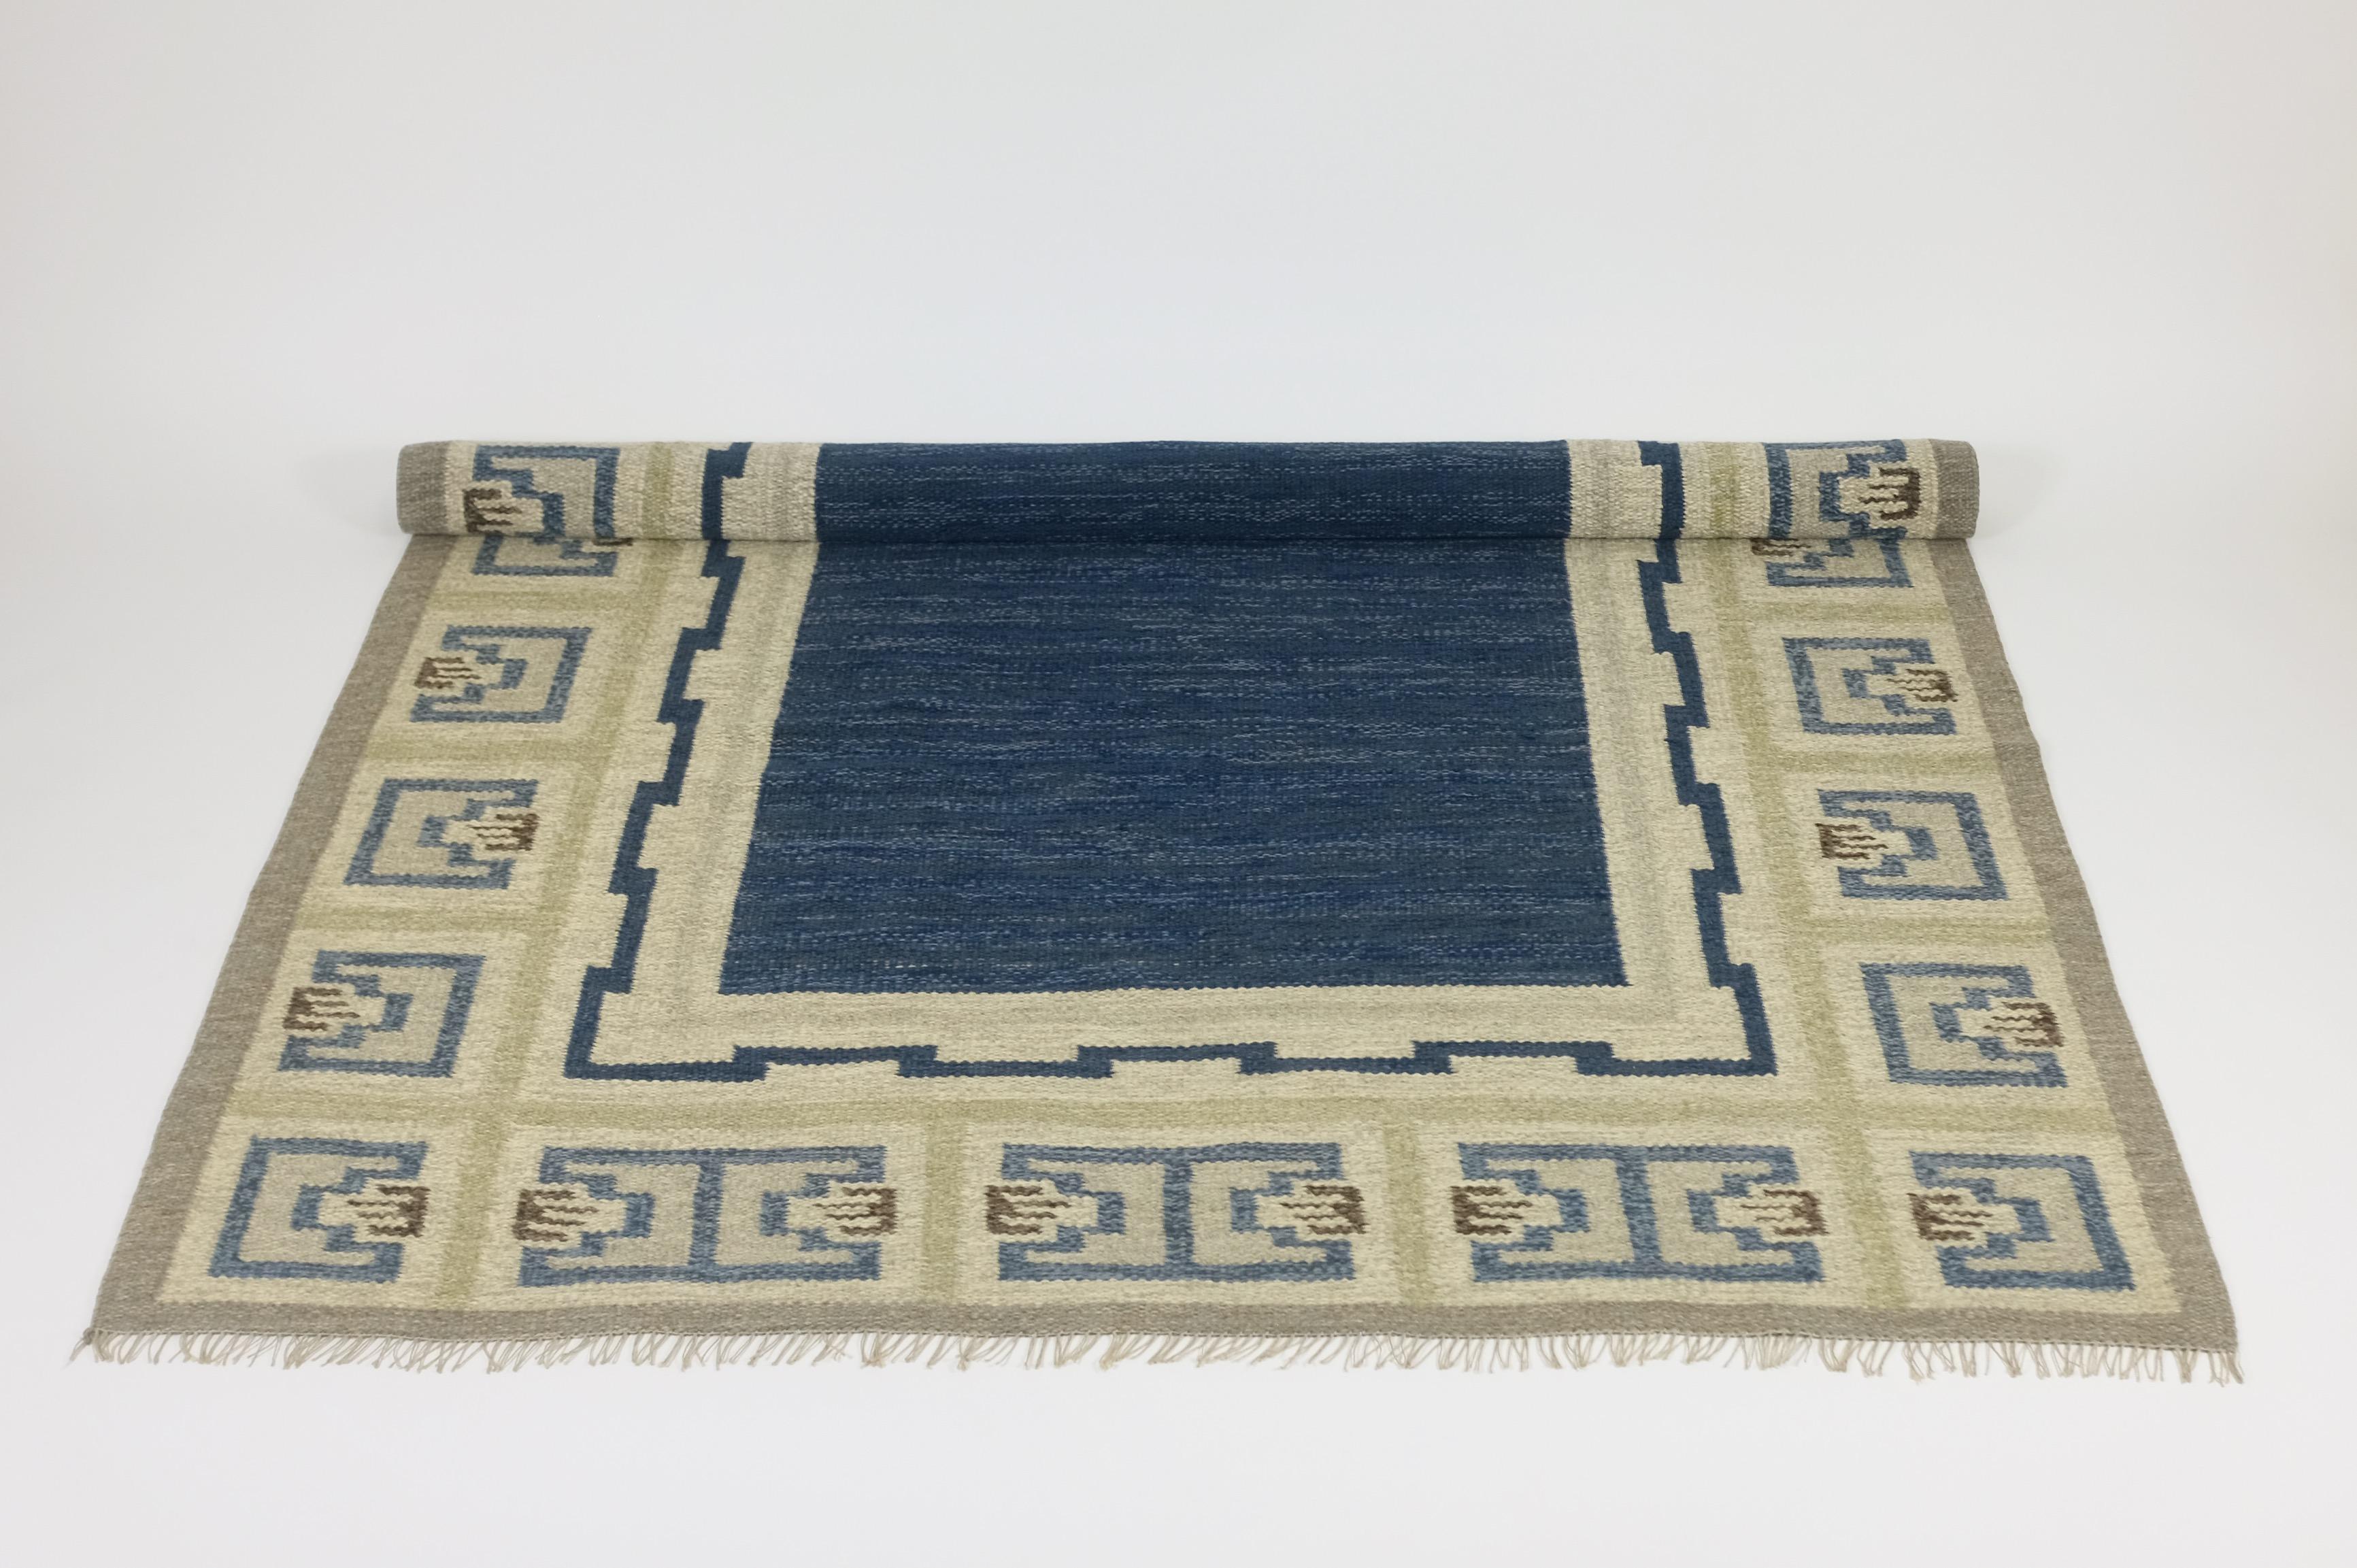 Rare tapis suédois des années 1940 par Aina Kånge. Magnifique motif de couleur bleu, vert et brun dans un style néo-grec sur un fond couleur sable. En très bon état vintage avec des franges restaurées et nettoyées professionnellement. 

Pays :